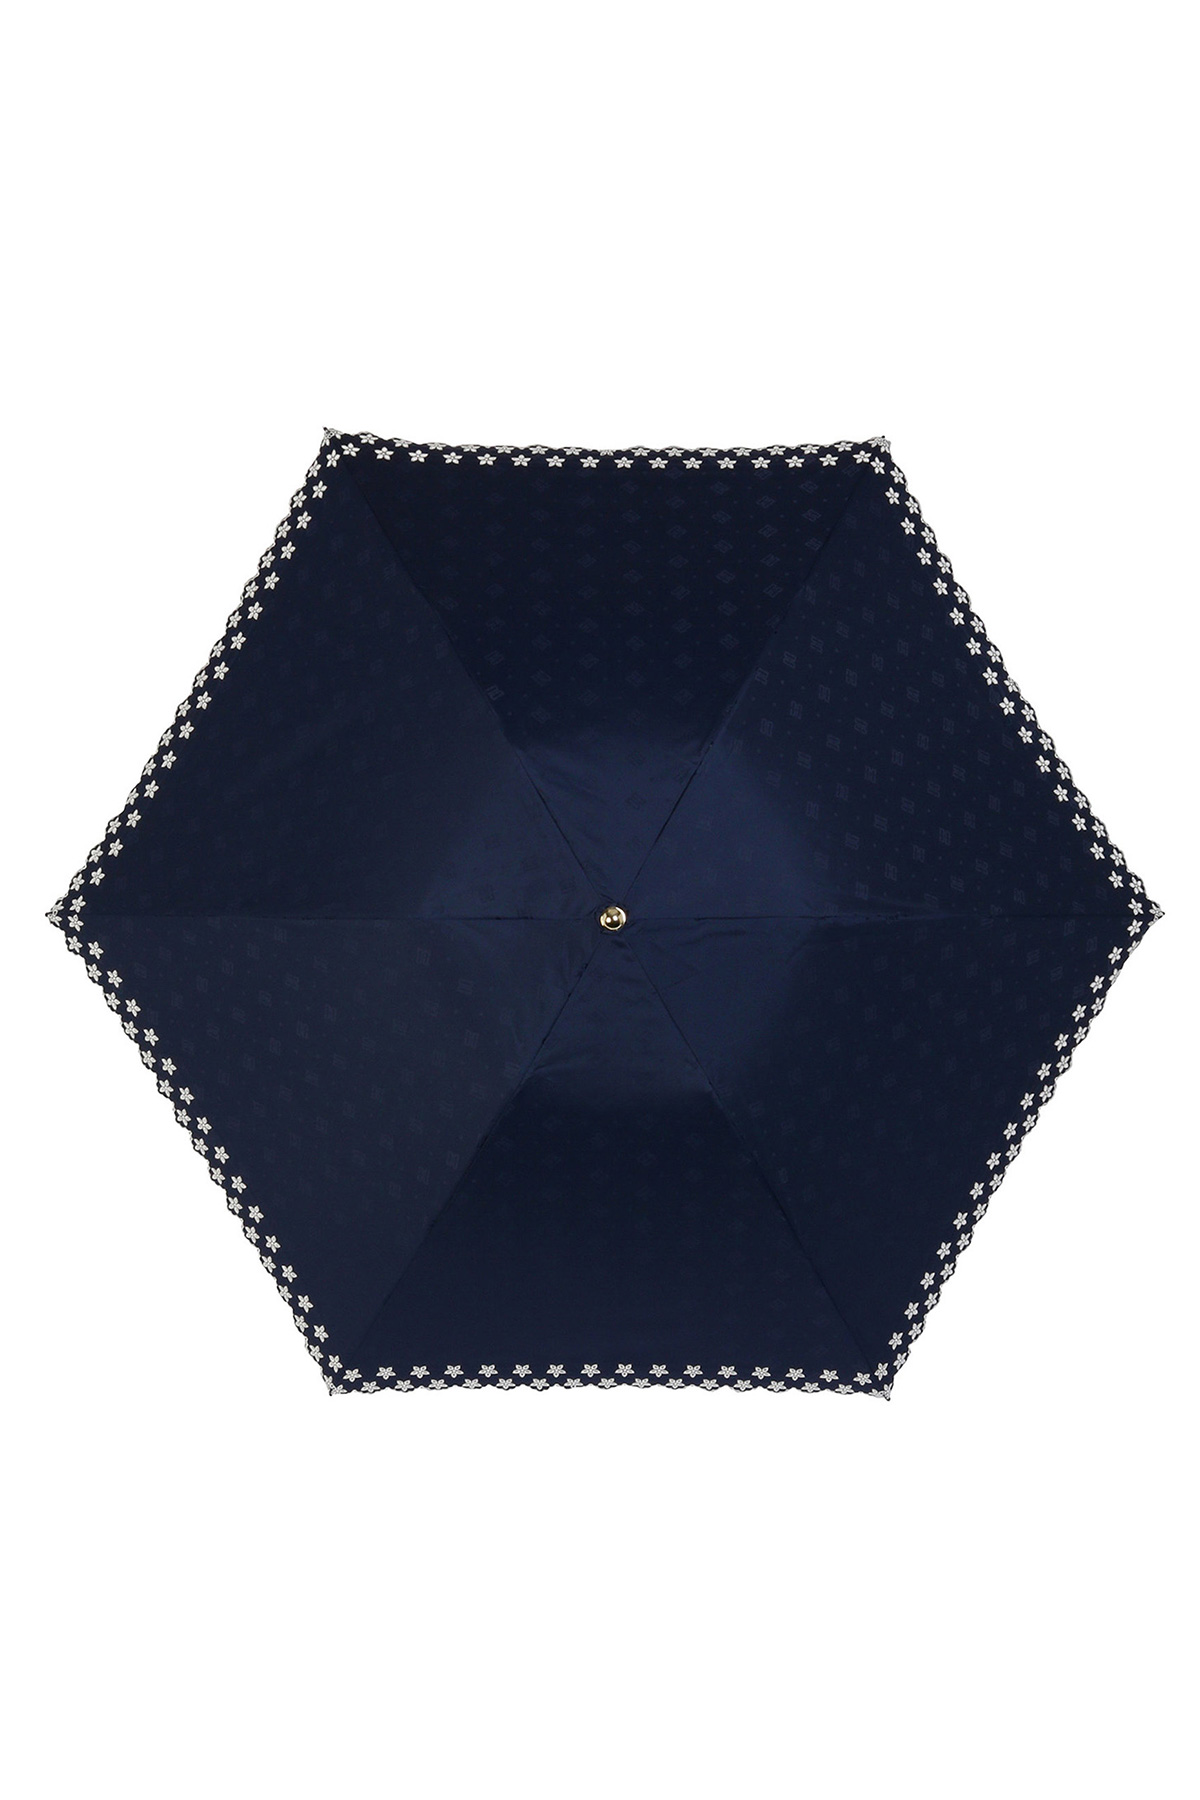 【日傘】ミニ折りたたみ傘ジャカード刺繍 詳細画像 5